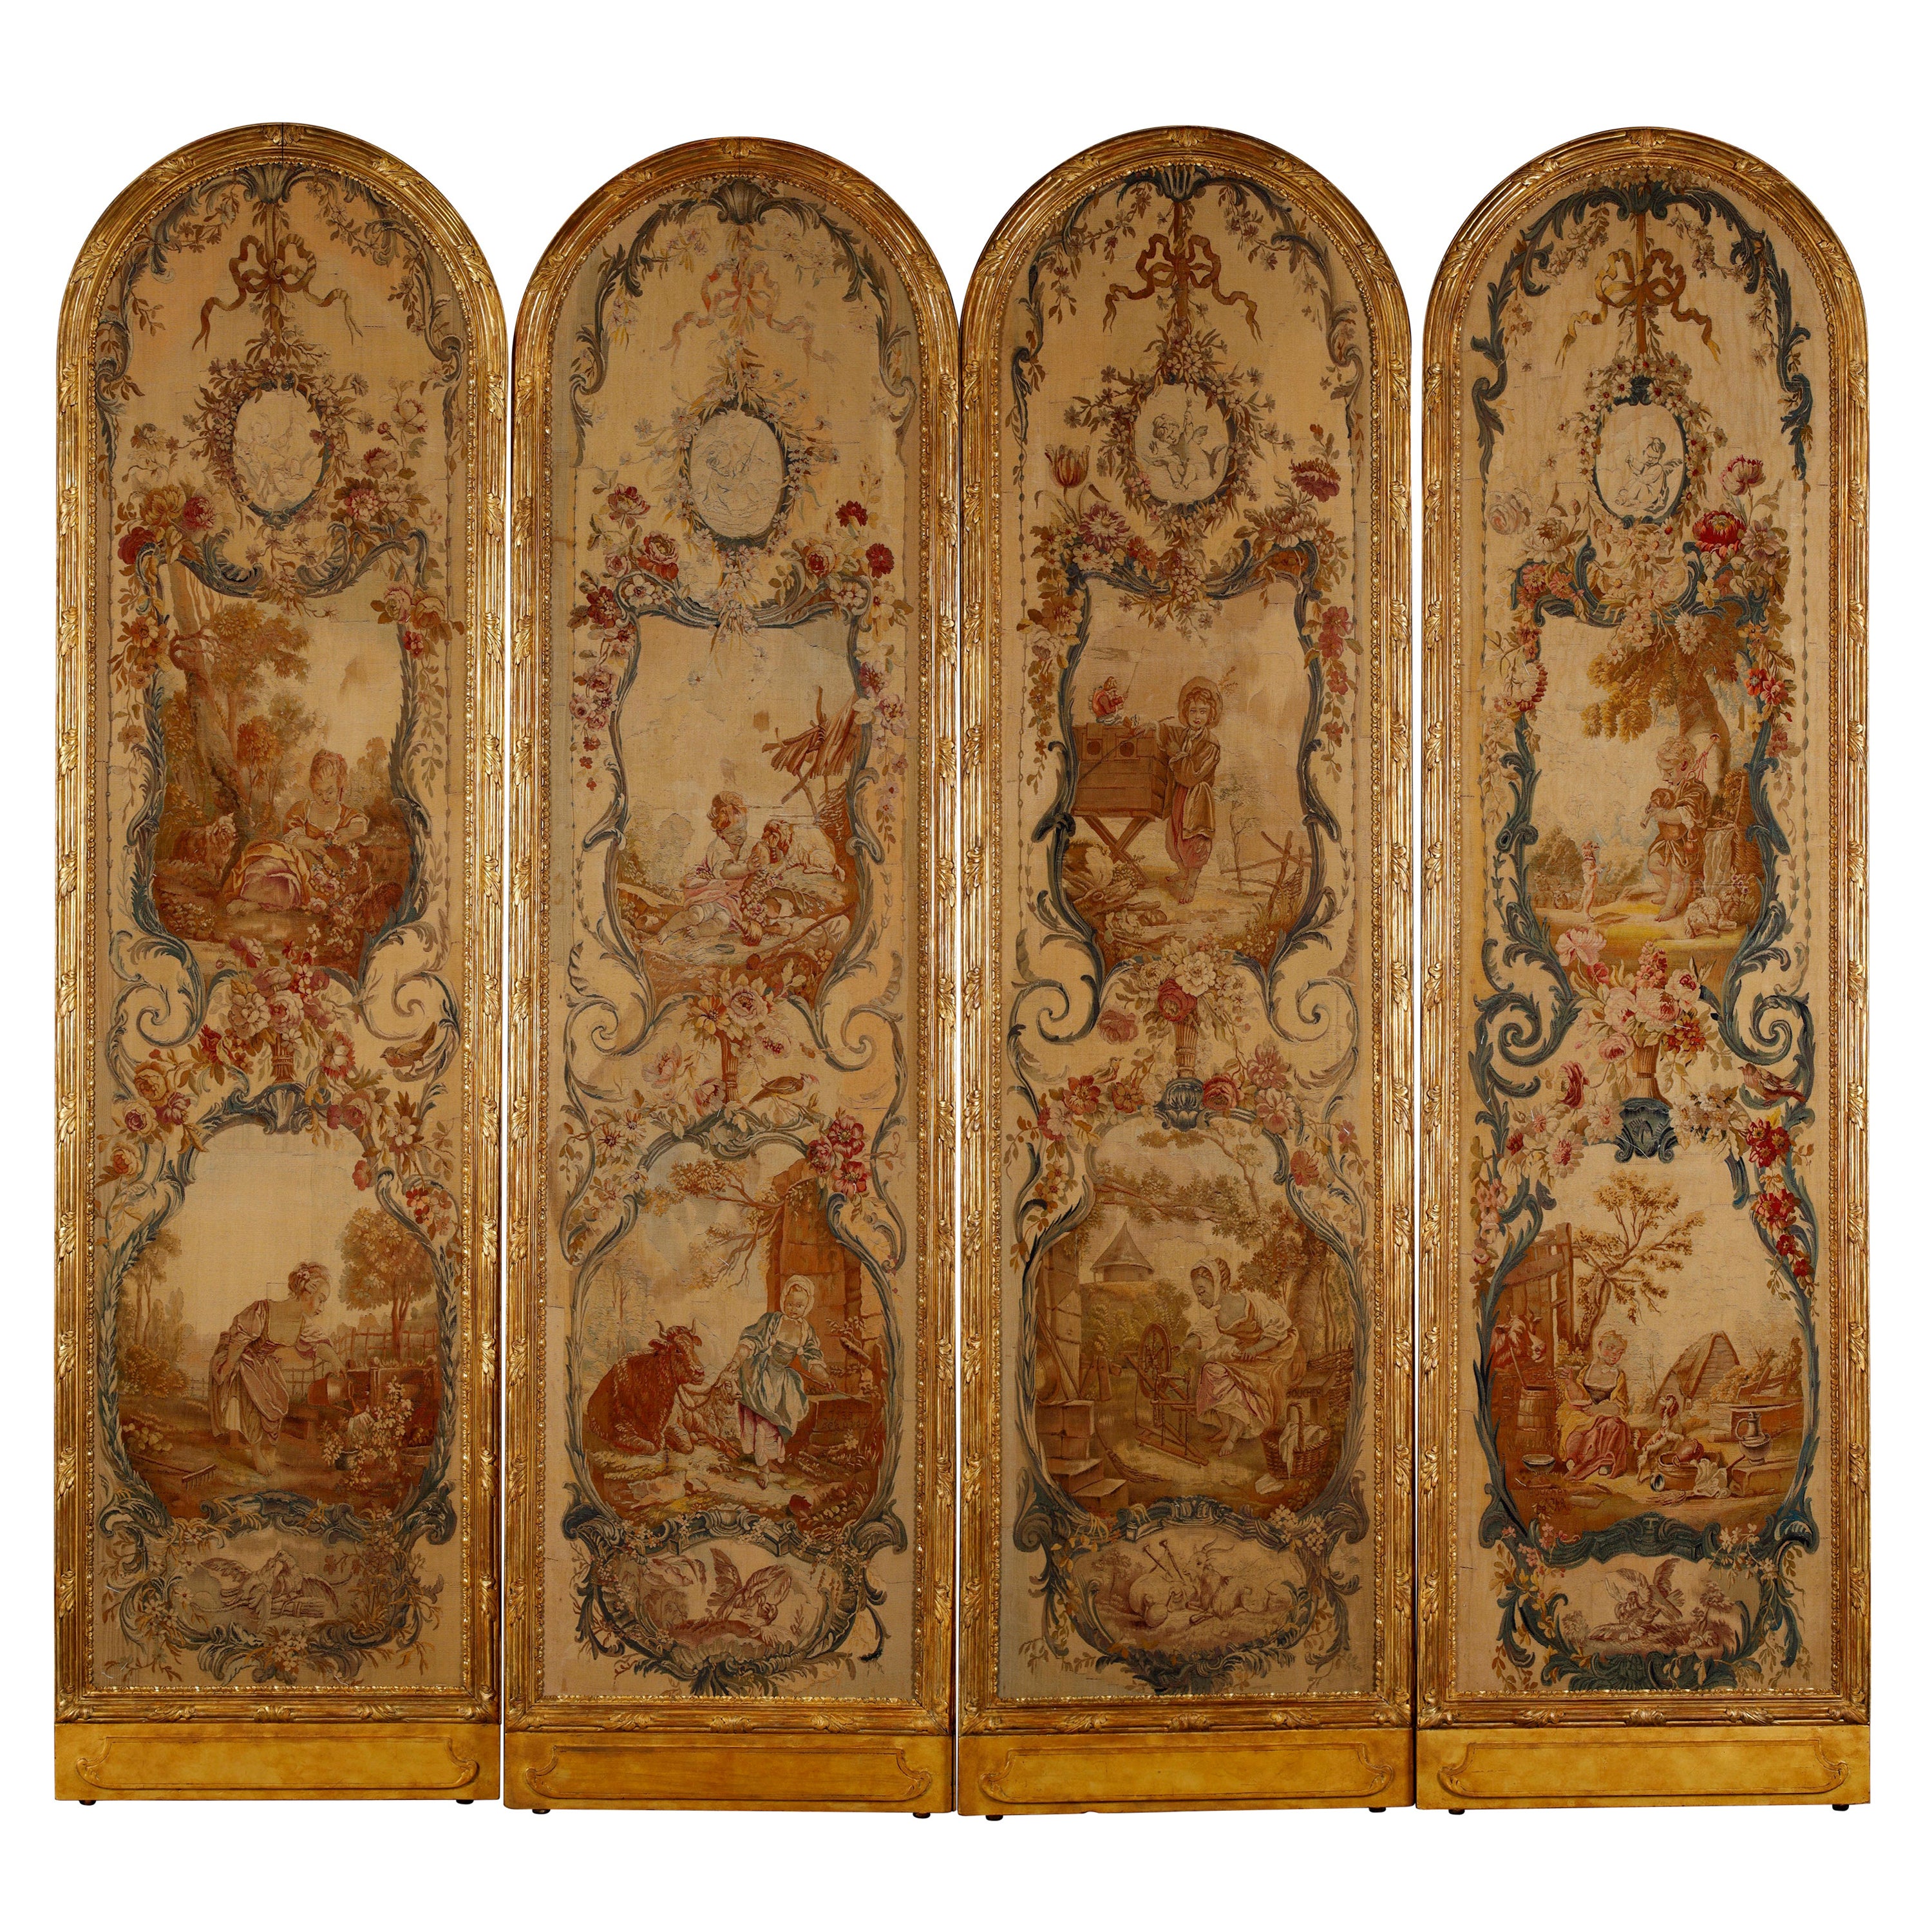 Set von 4 Wandteppichen, signiert von Beauvais Manufacture aft. F.Boucher, Frankreich, 1770